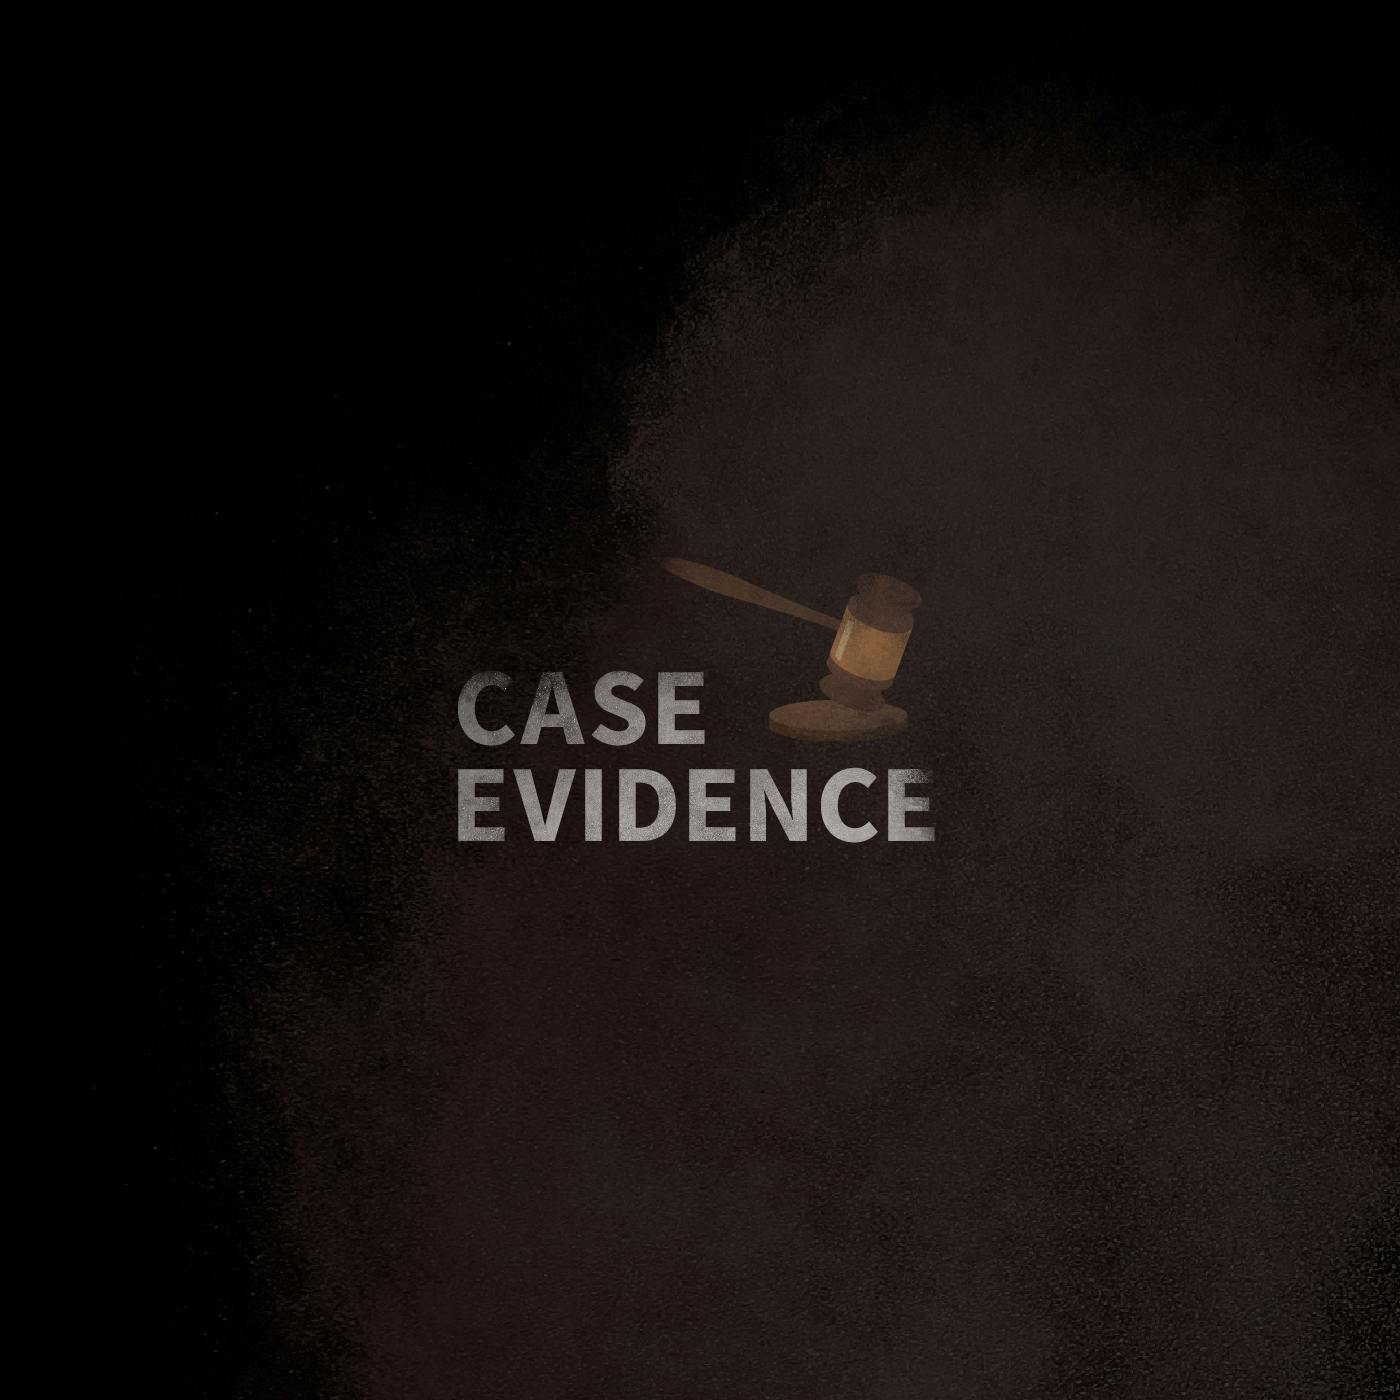 Case Evidence 06.12.17